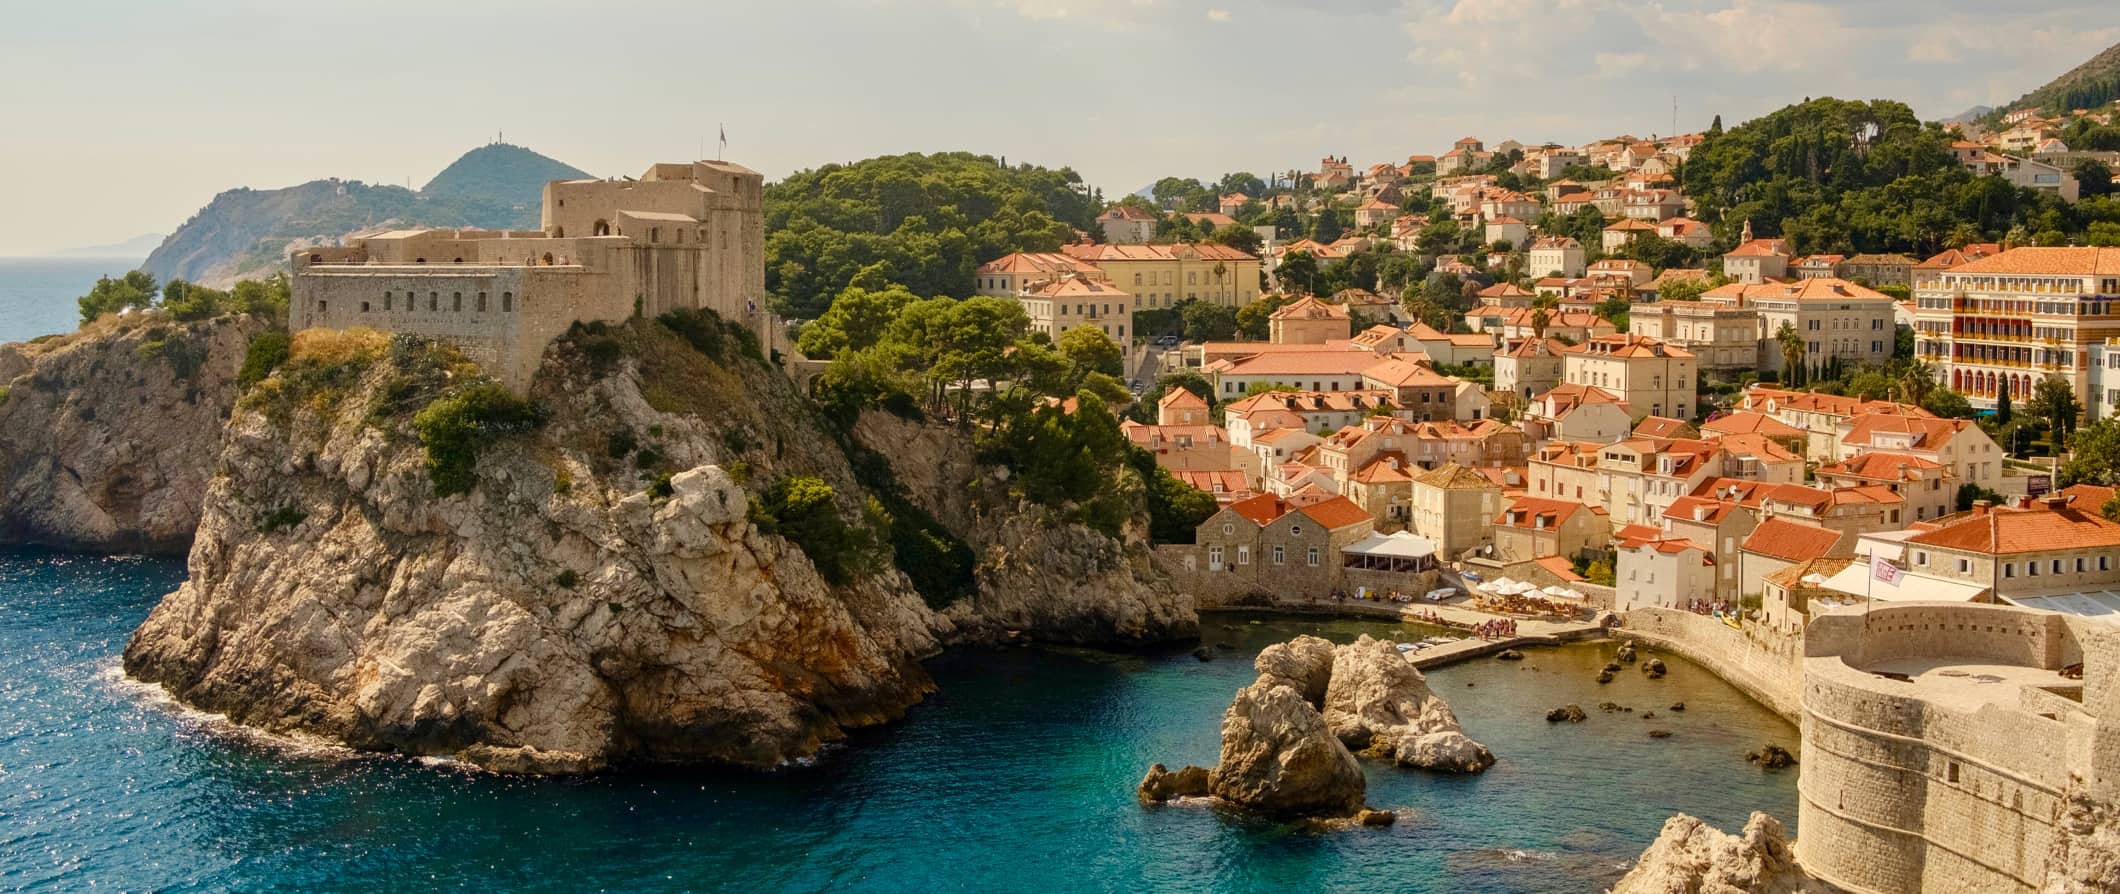 Costa acidentada da Croácia cercada por edifícios históricos e arquitetura